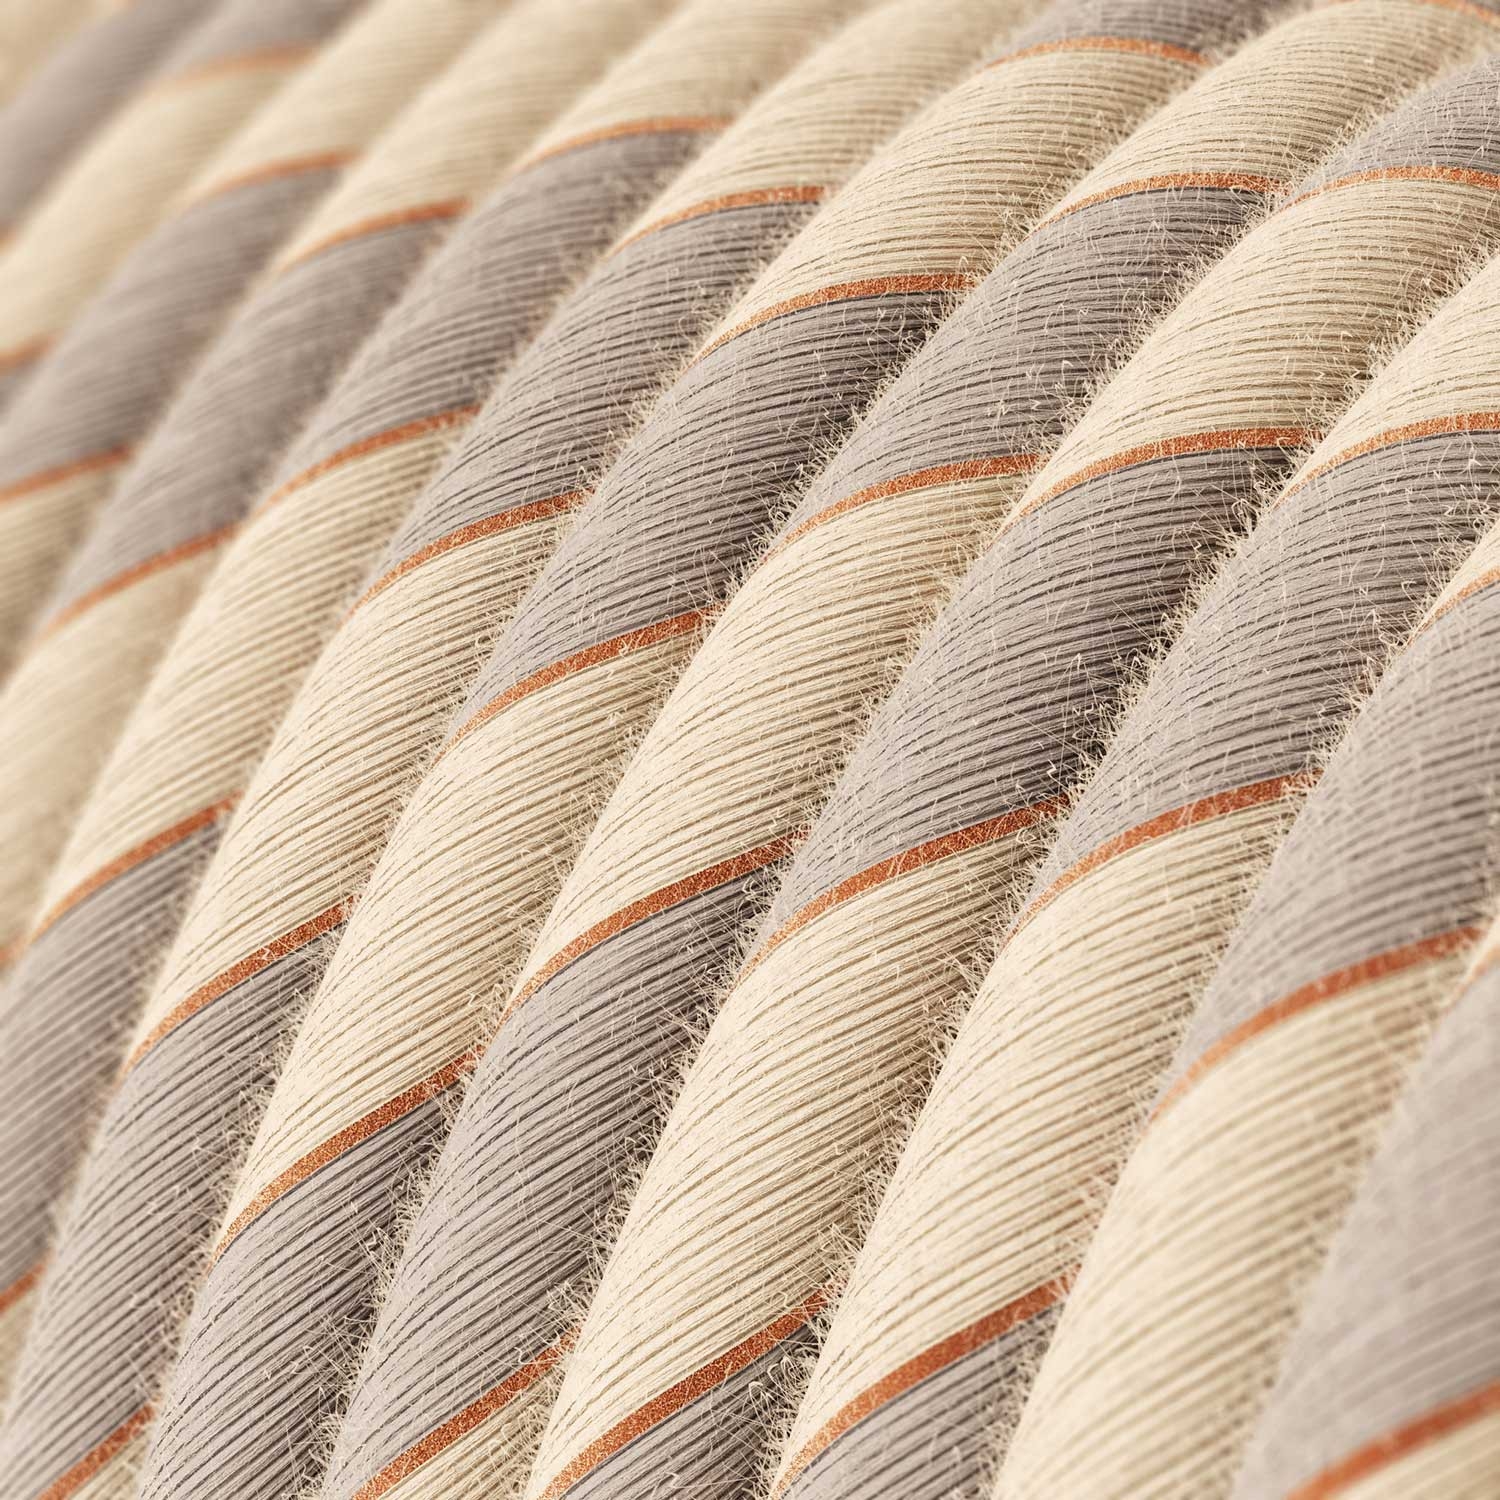 ERR05 Copper Thread Vertigo Cotton and Linen Round Electrical Fabric Cloth Cord Cable